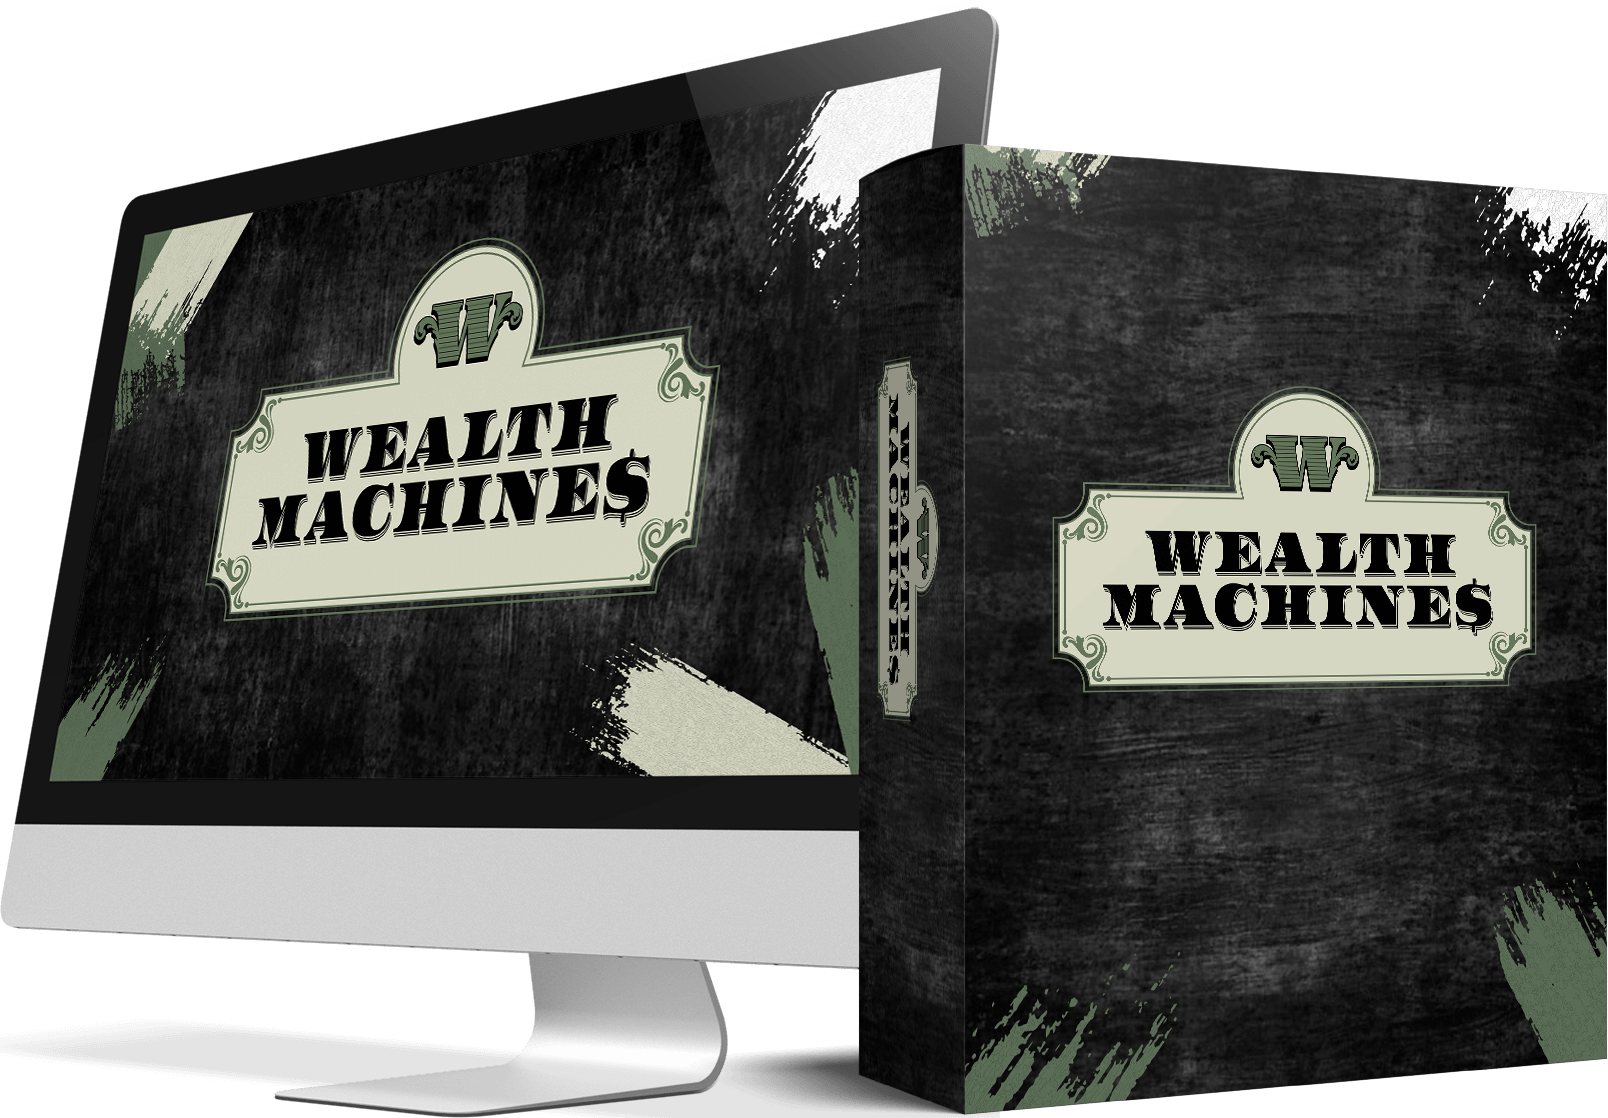 [GET] Wealth Machines Free Download